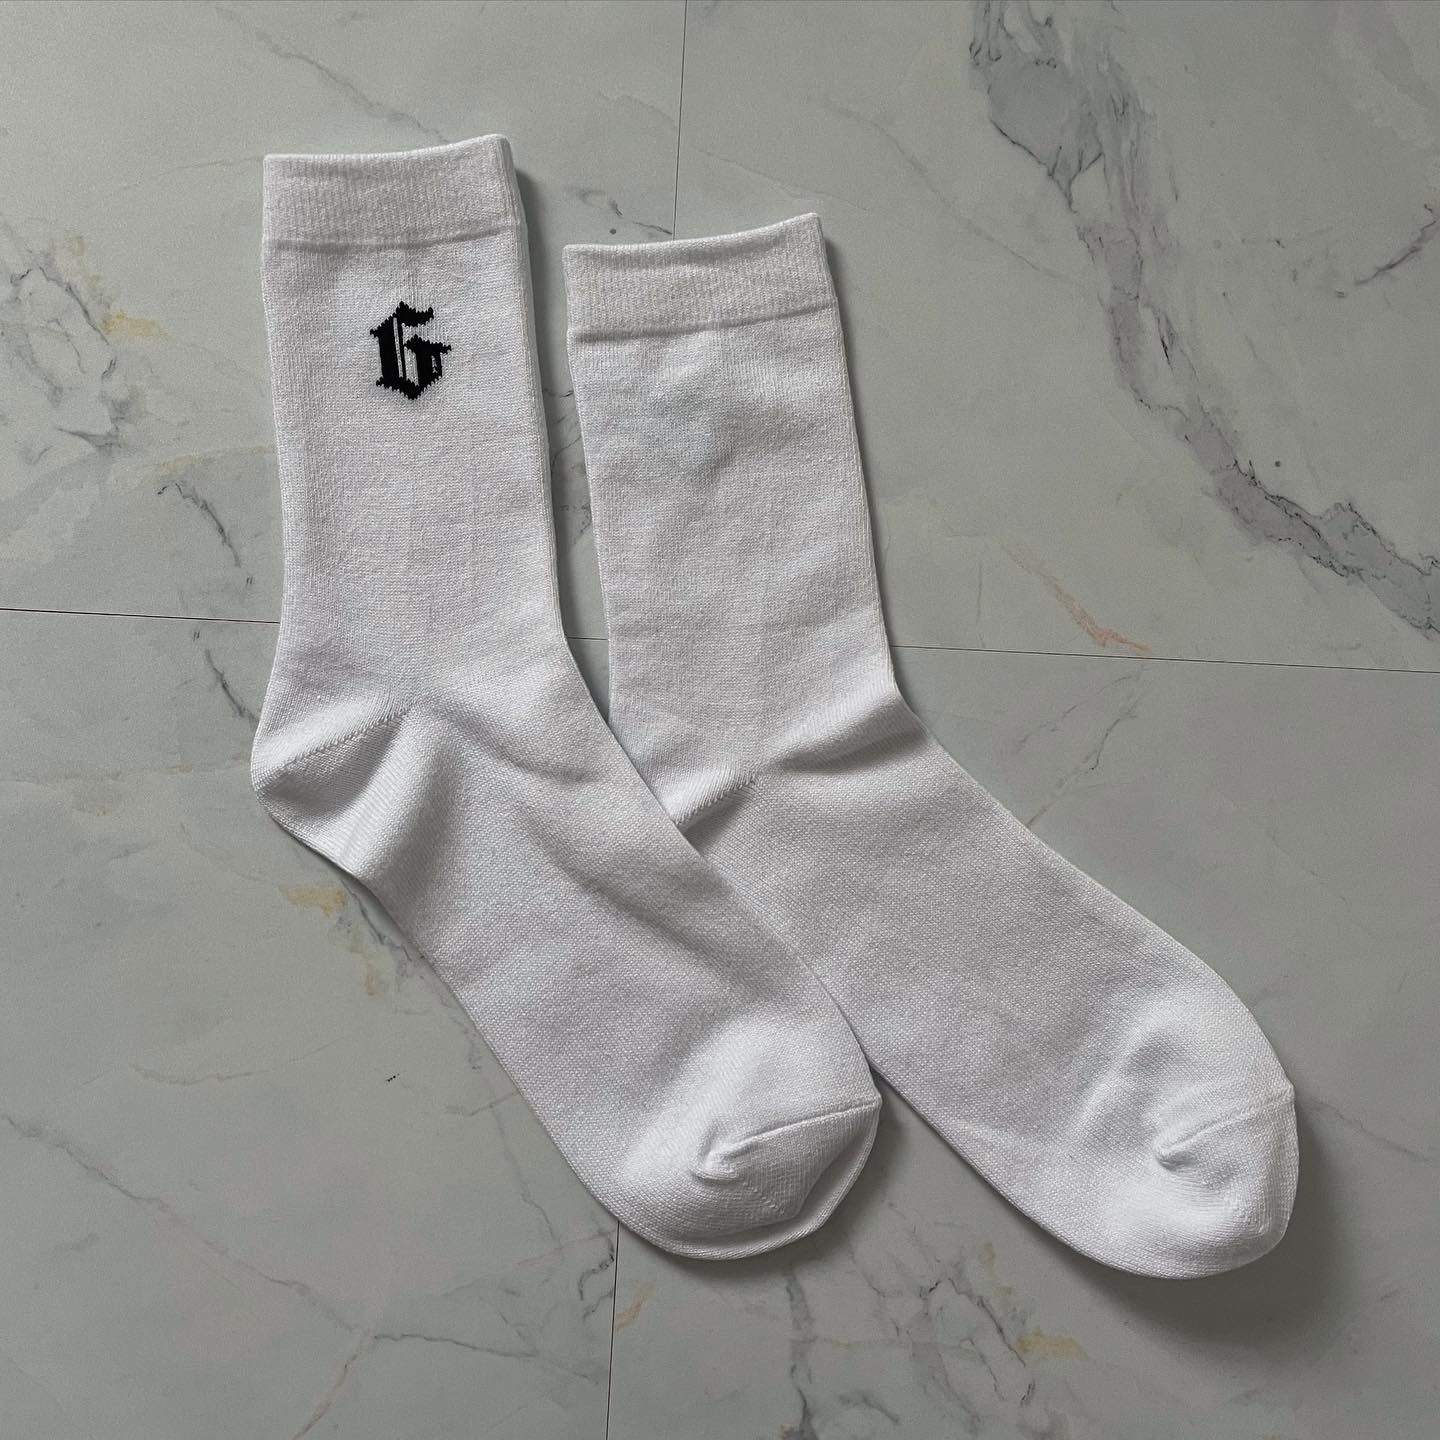 gibous G socks